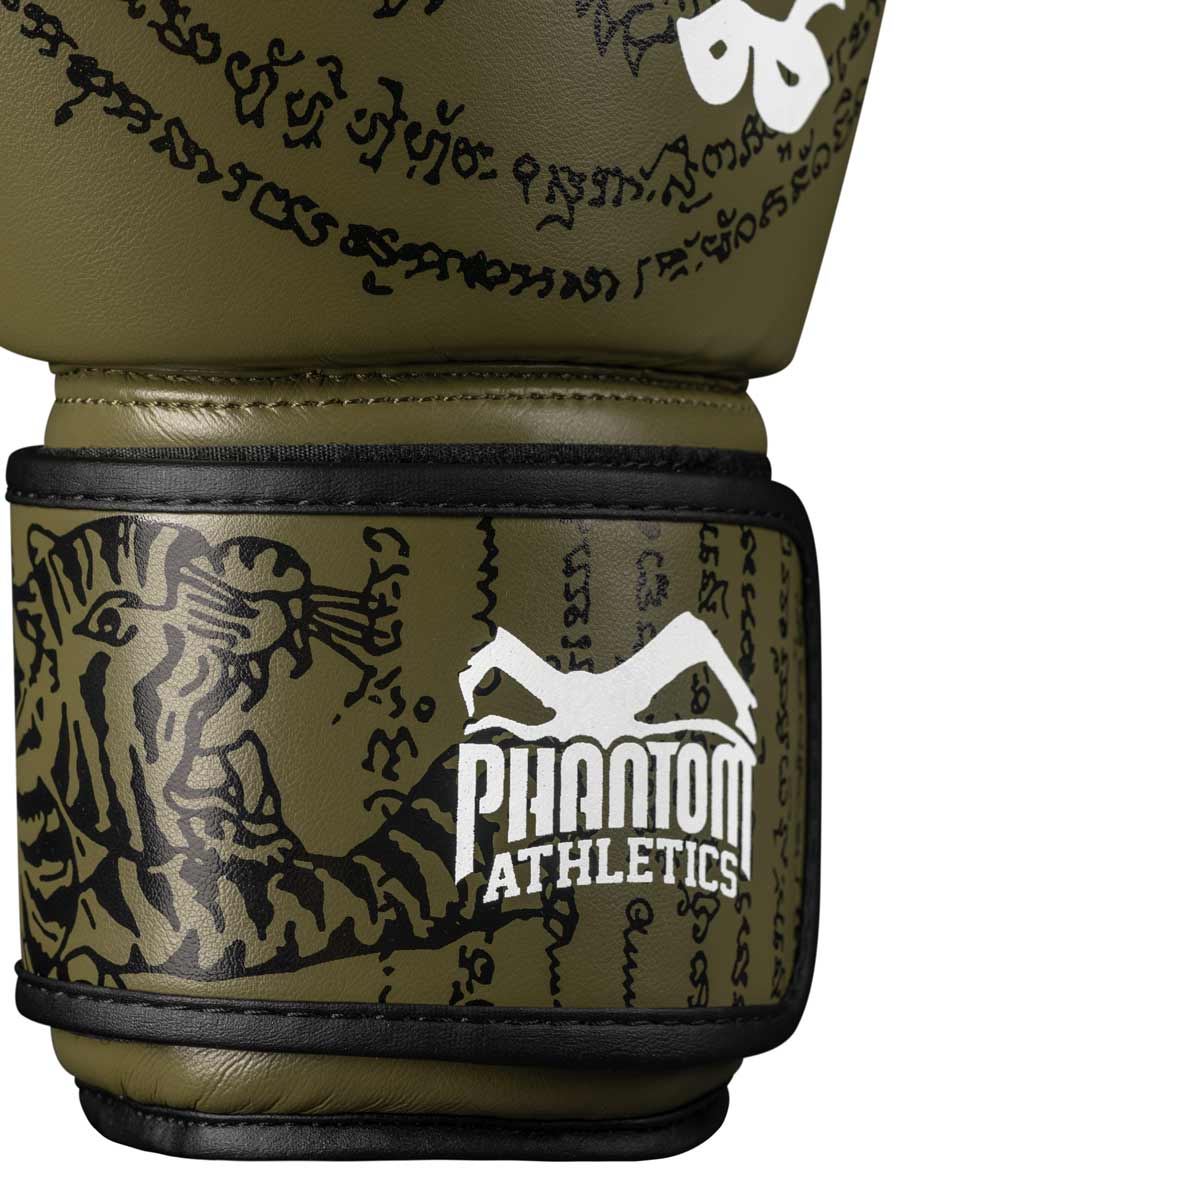 Die Phantom Muay Thai Boxhandschuhe mit traditionellem Sak Yant Design und hochwertiger Verarbeitung.